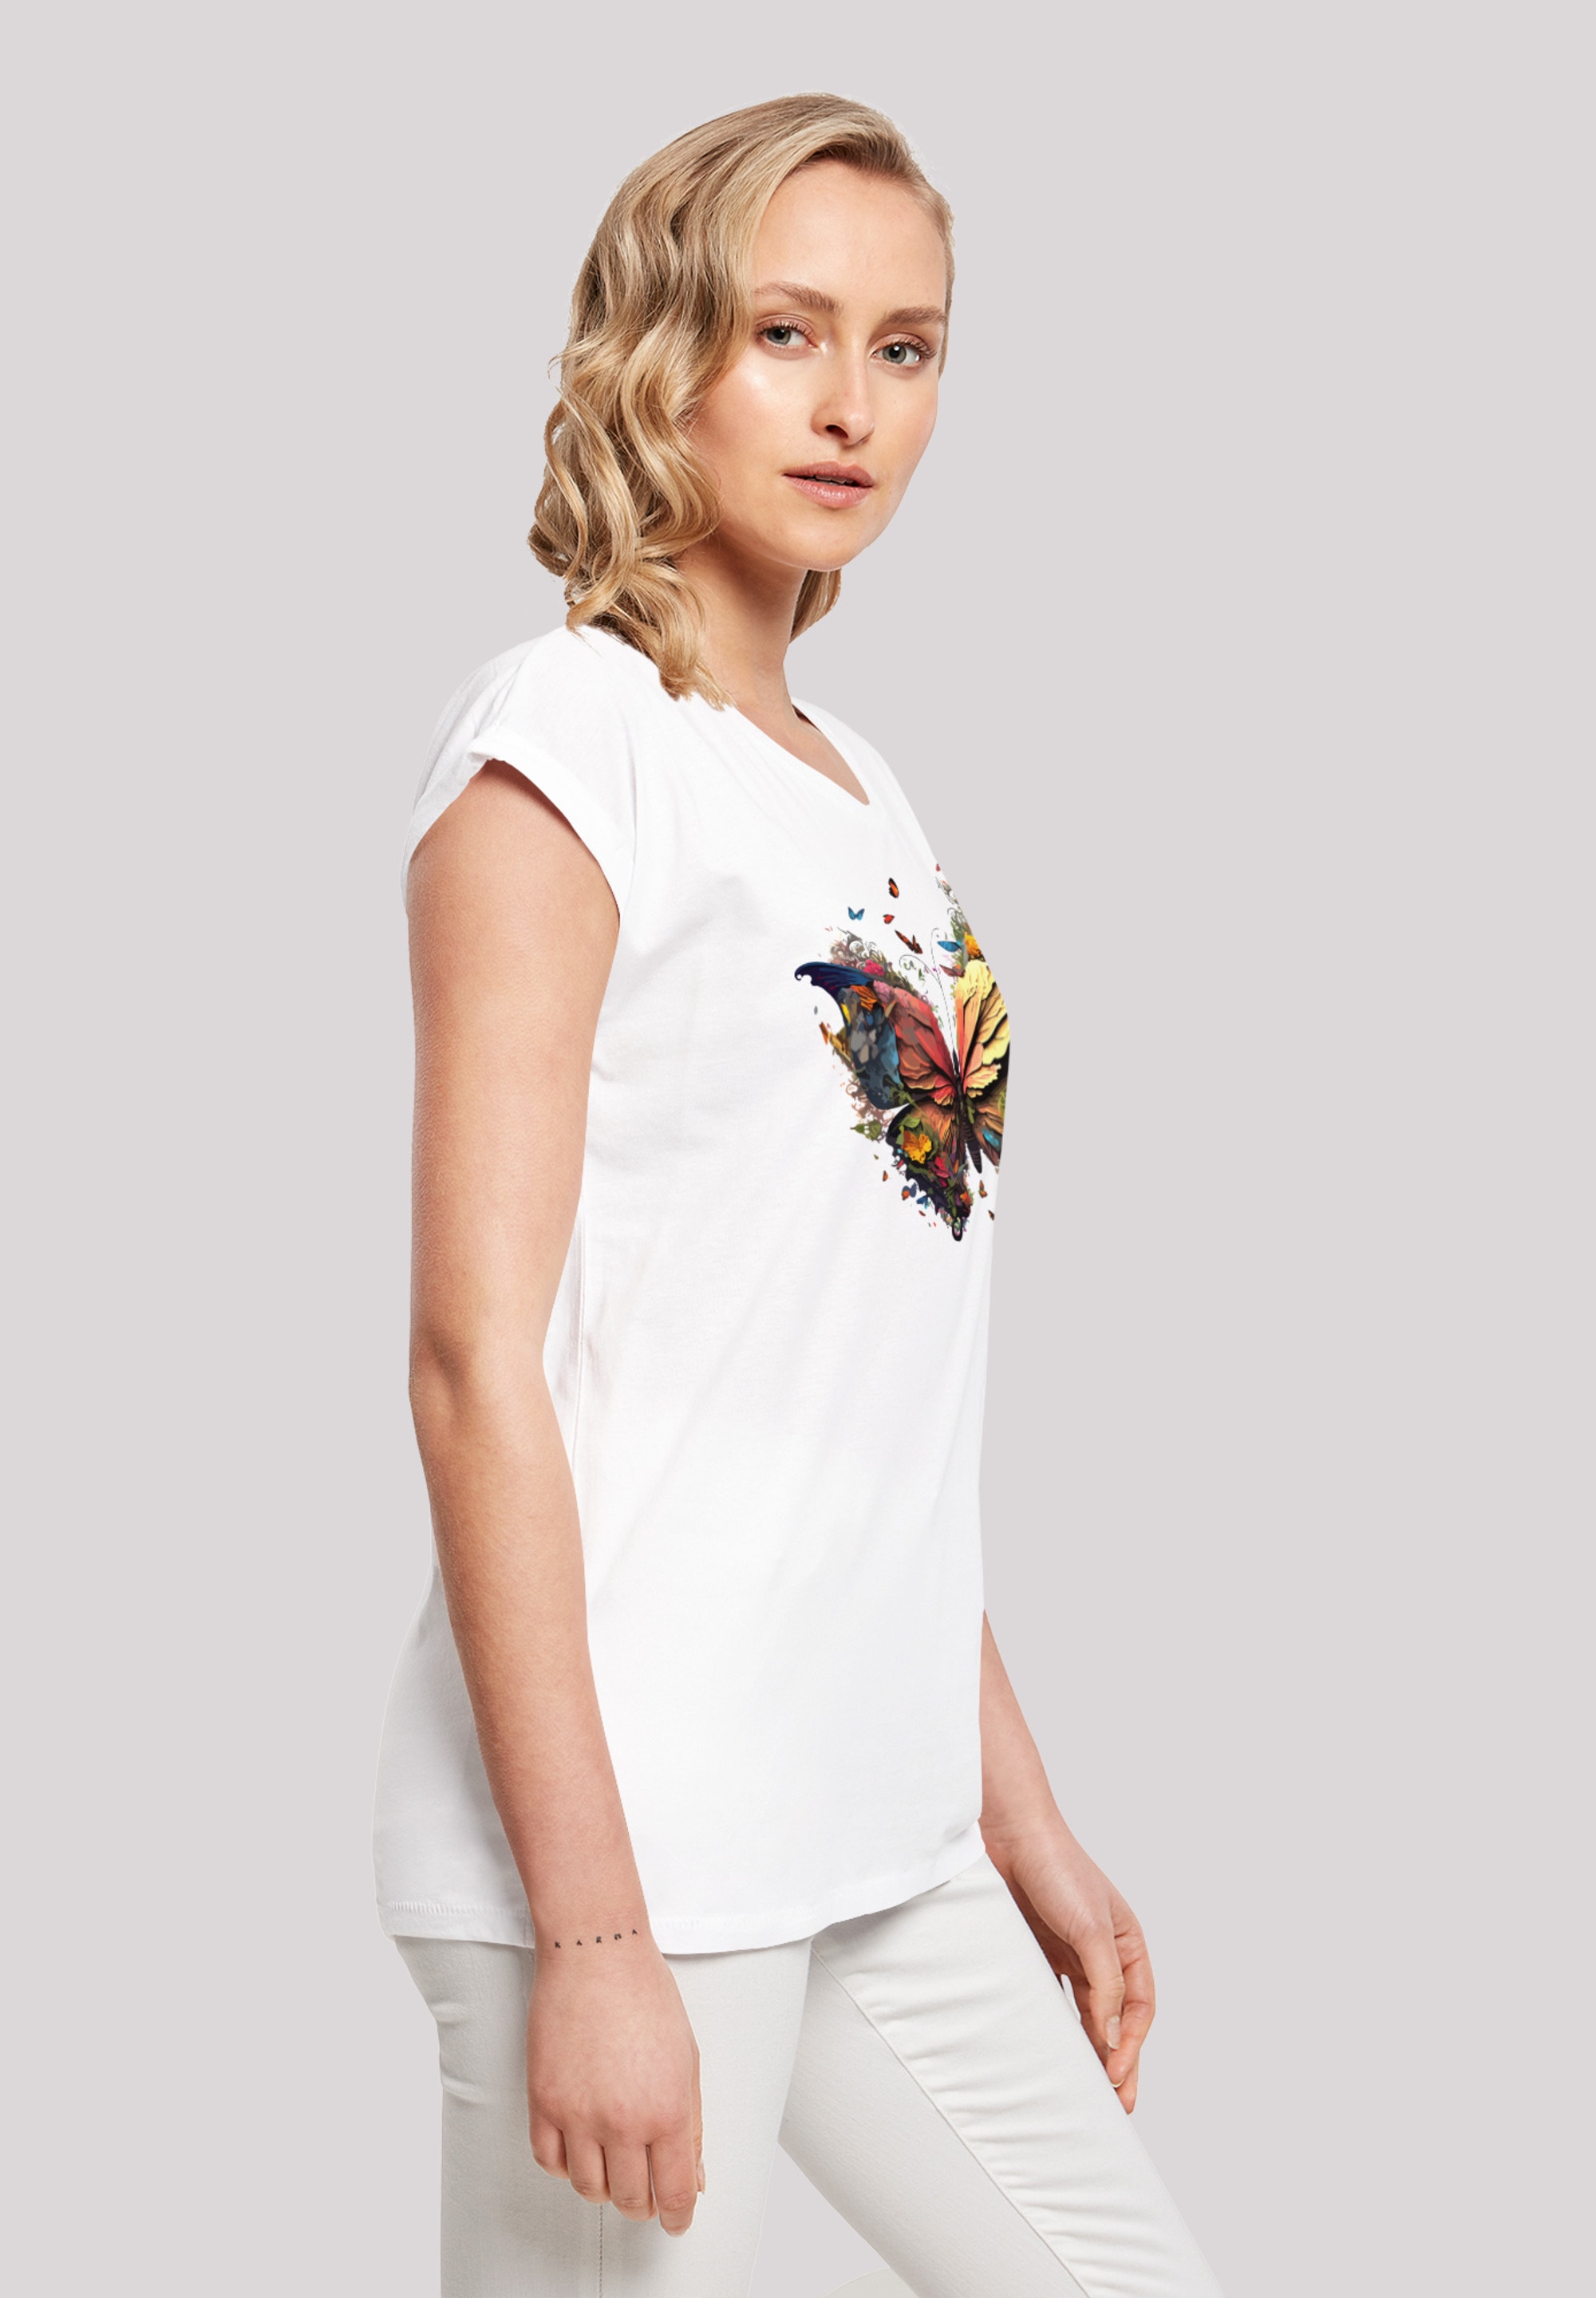 F4NT4STIC T-Shirt »Schmetterling Bunt«, Print